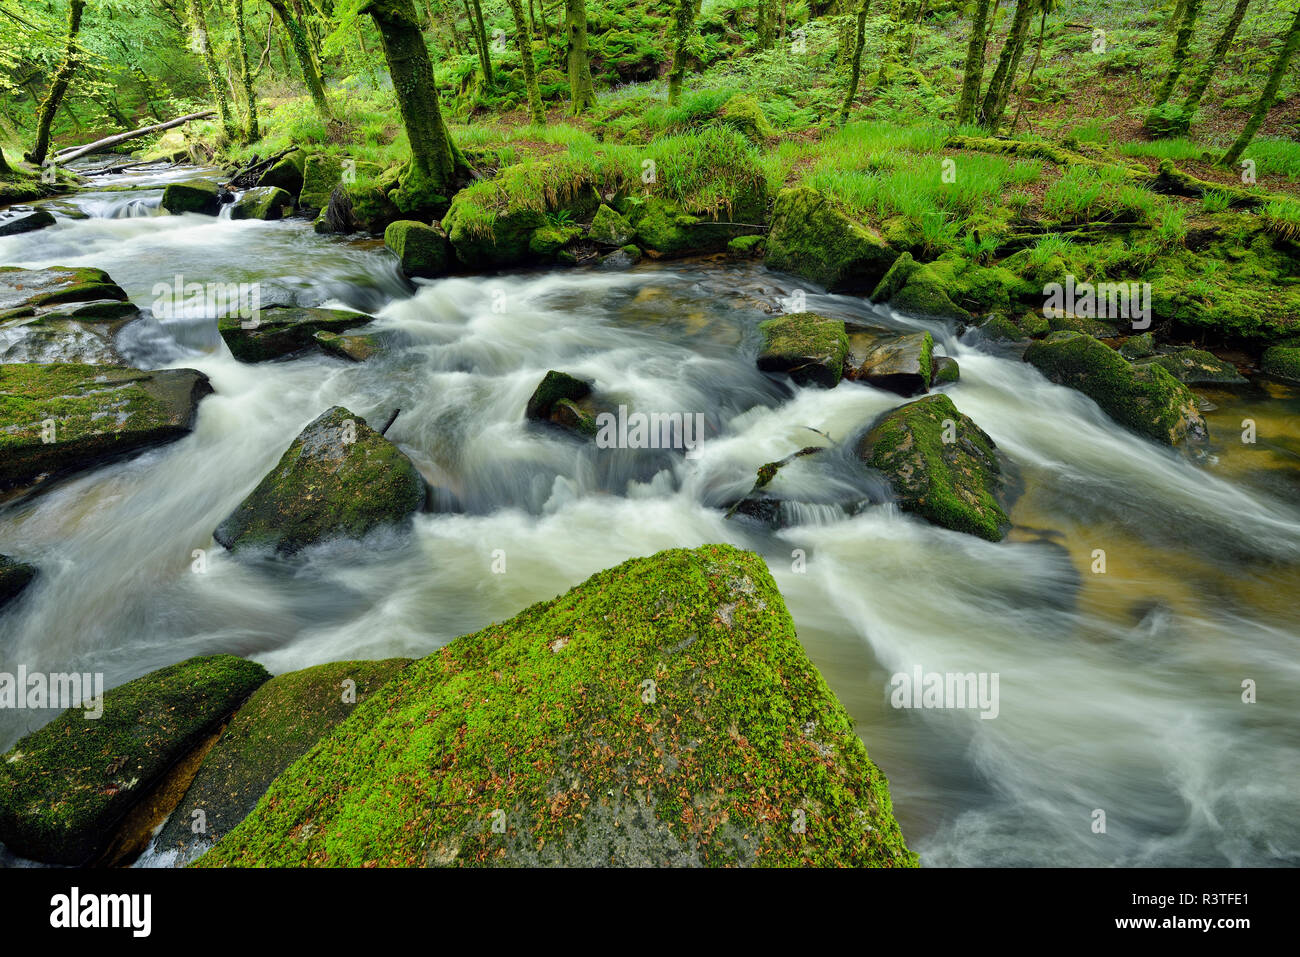 Great Britain, England, Cornwall, Liskeard, River Fowey at Golitha Falls Stock Photo